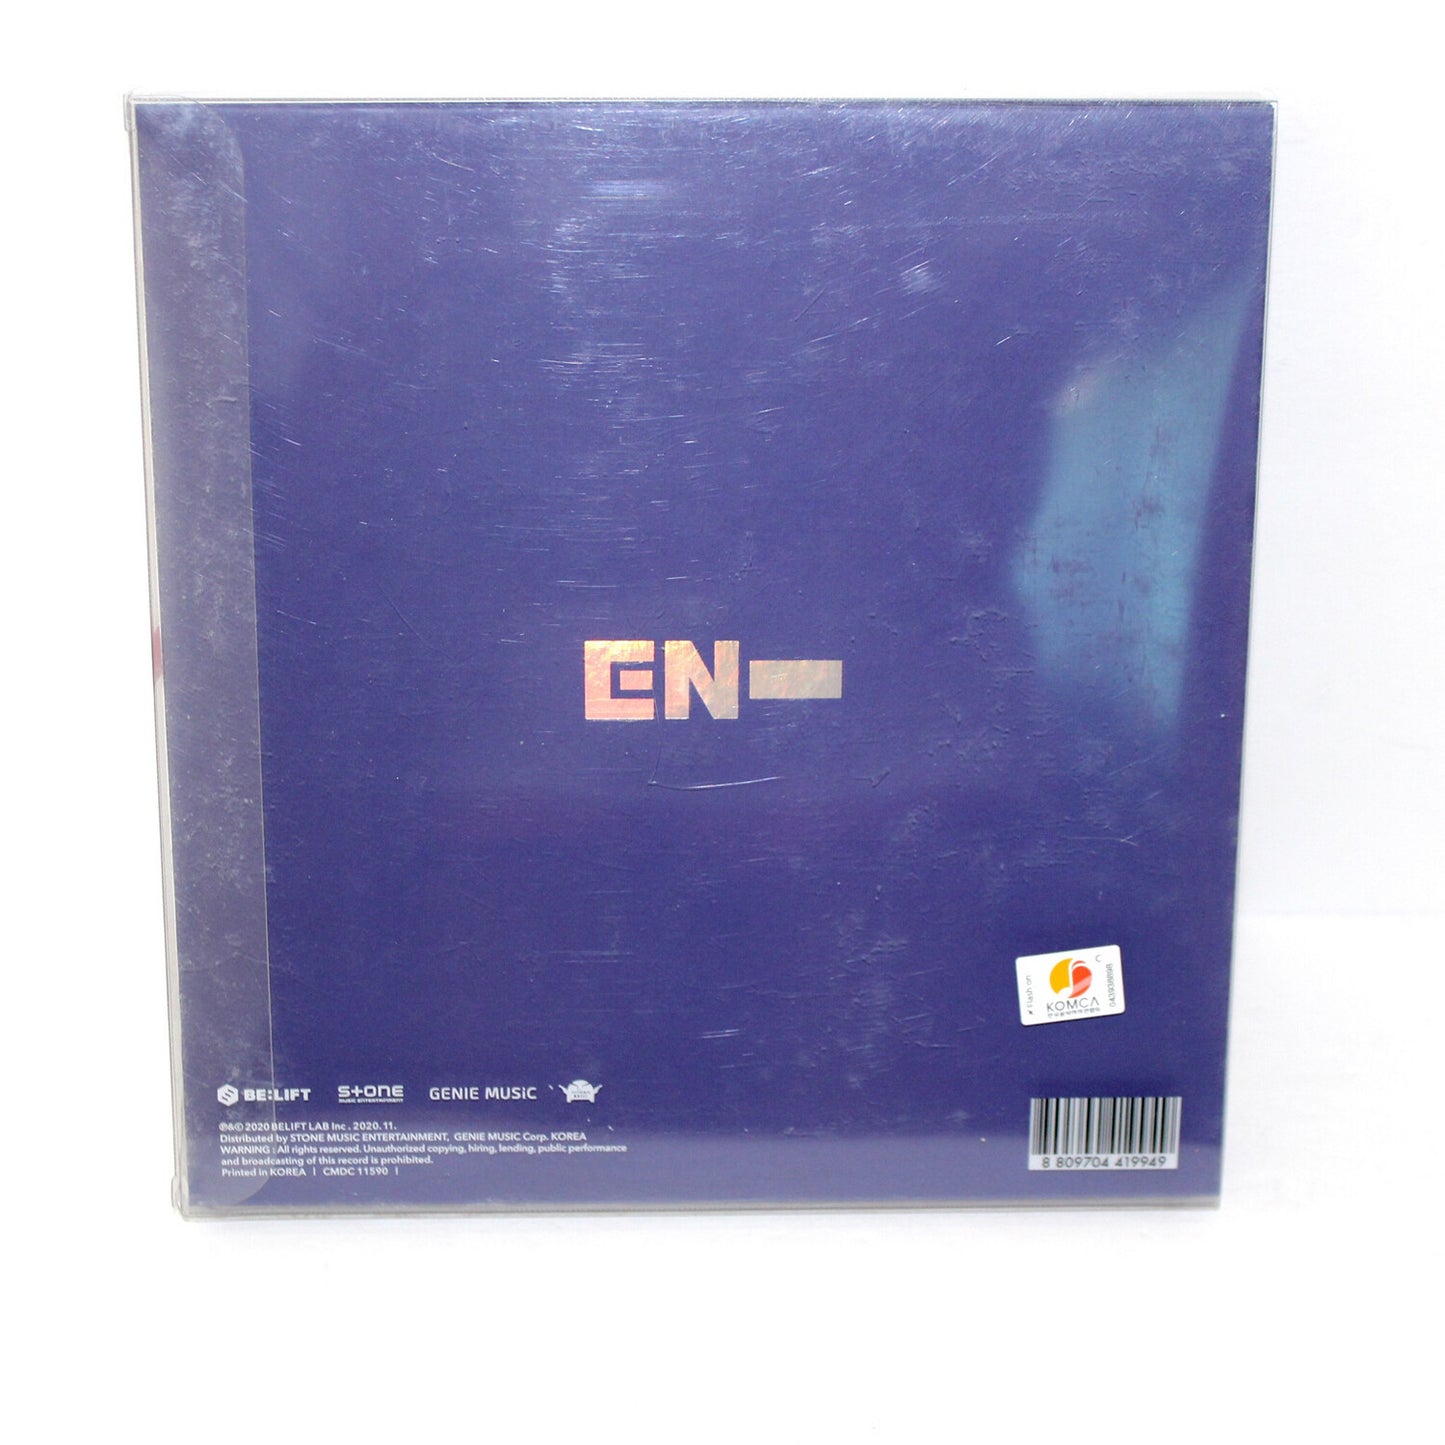 ENHYPEN 1st Mini Album - Border: Day One | Dusk Ver.